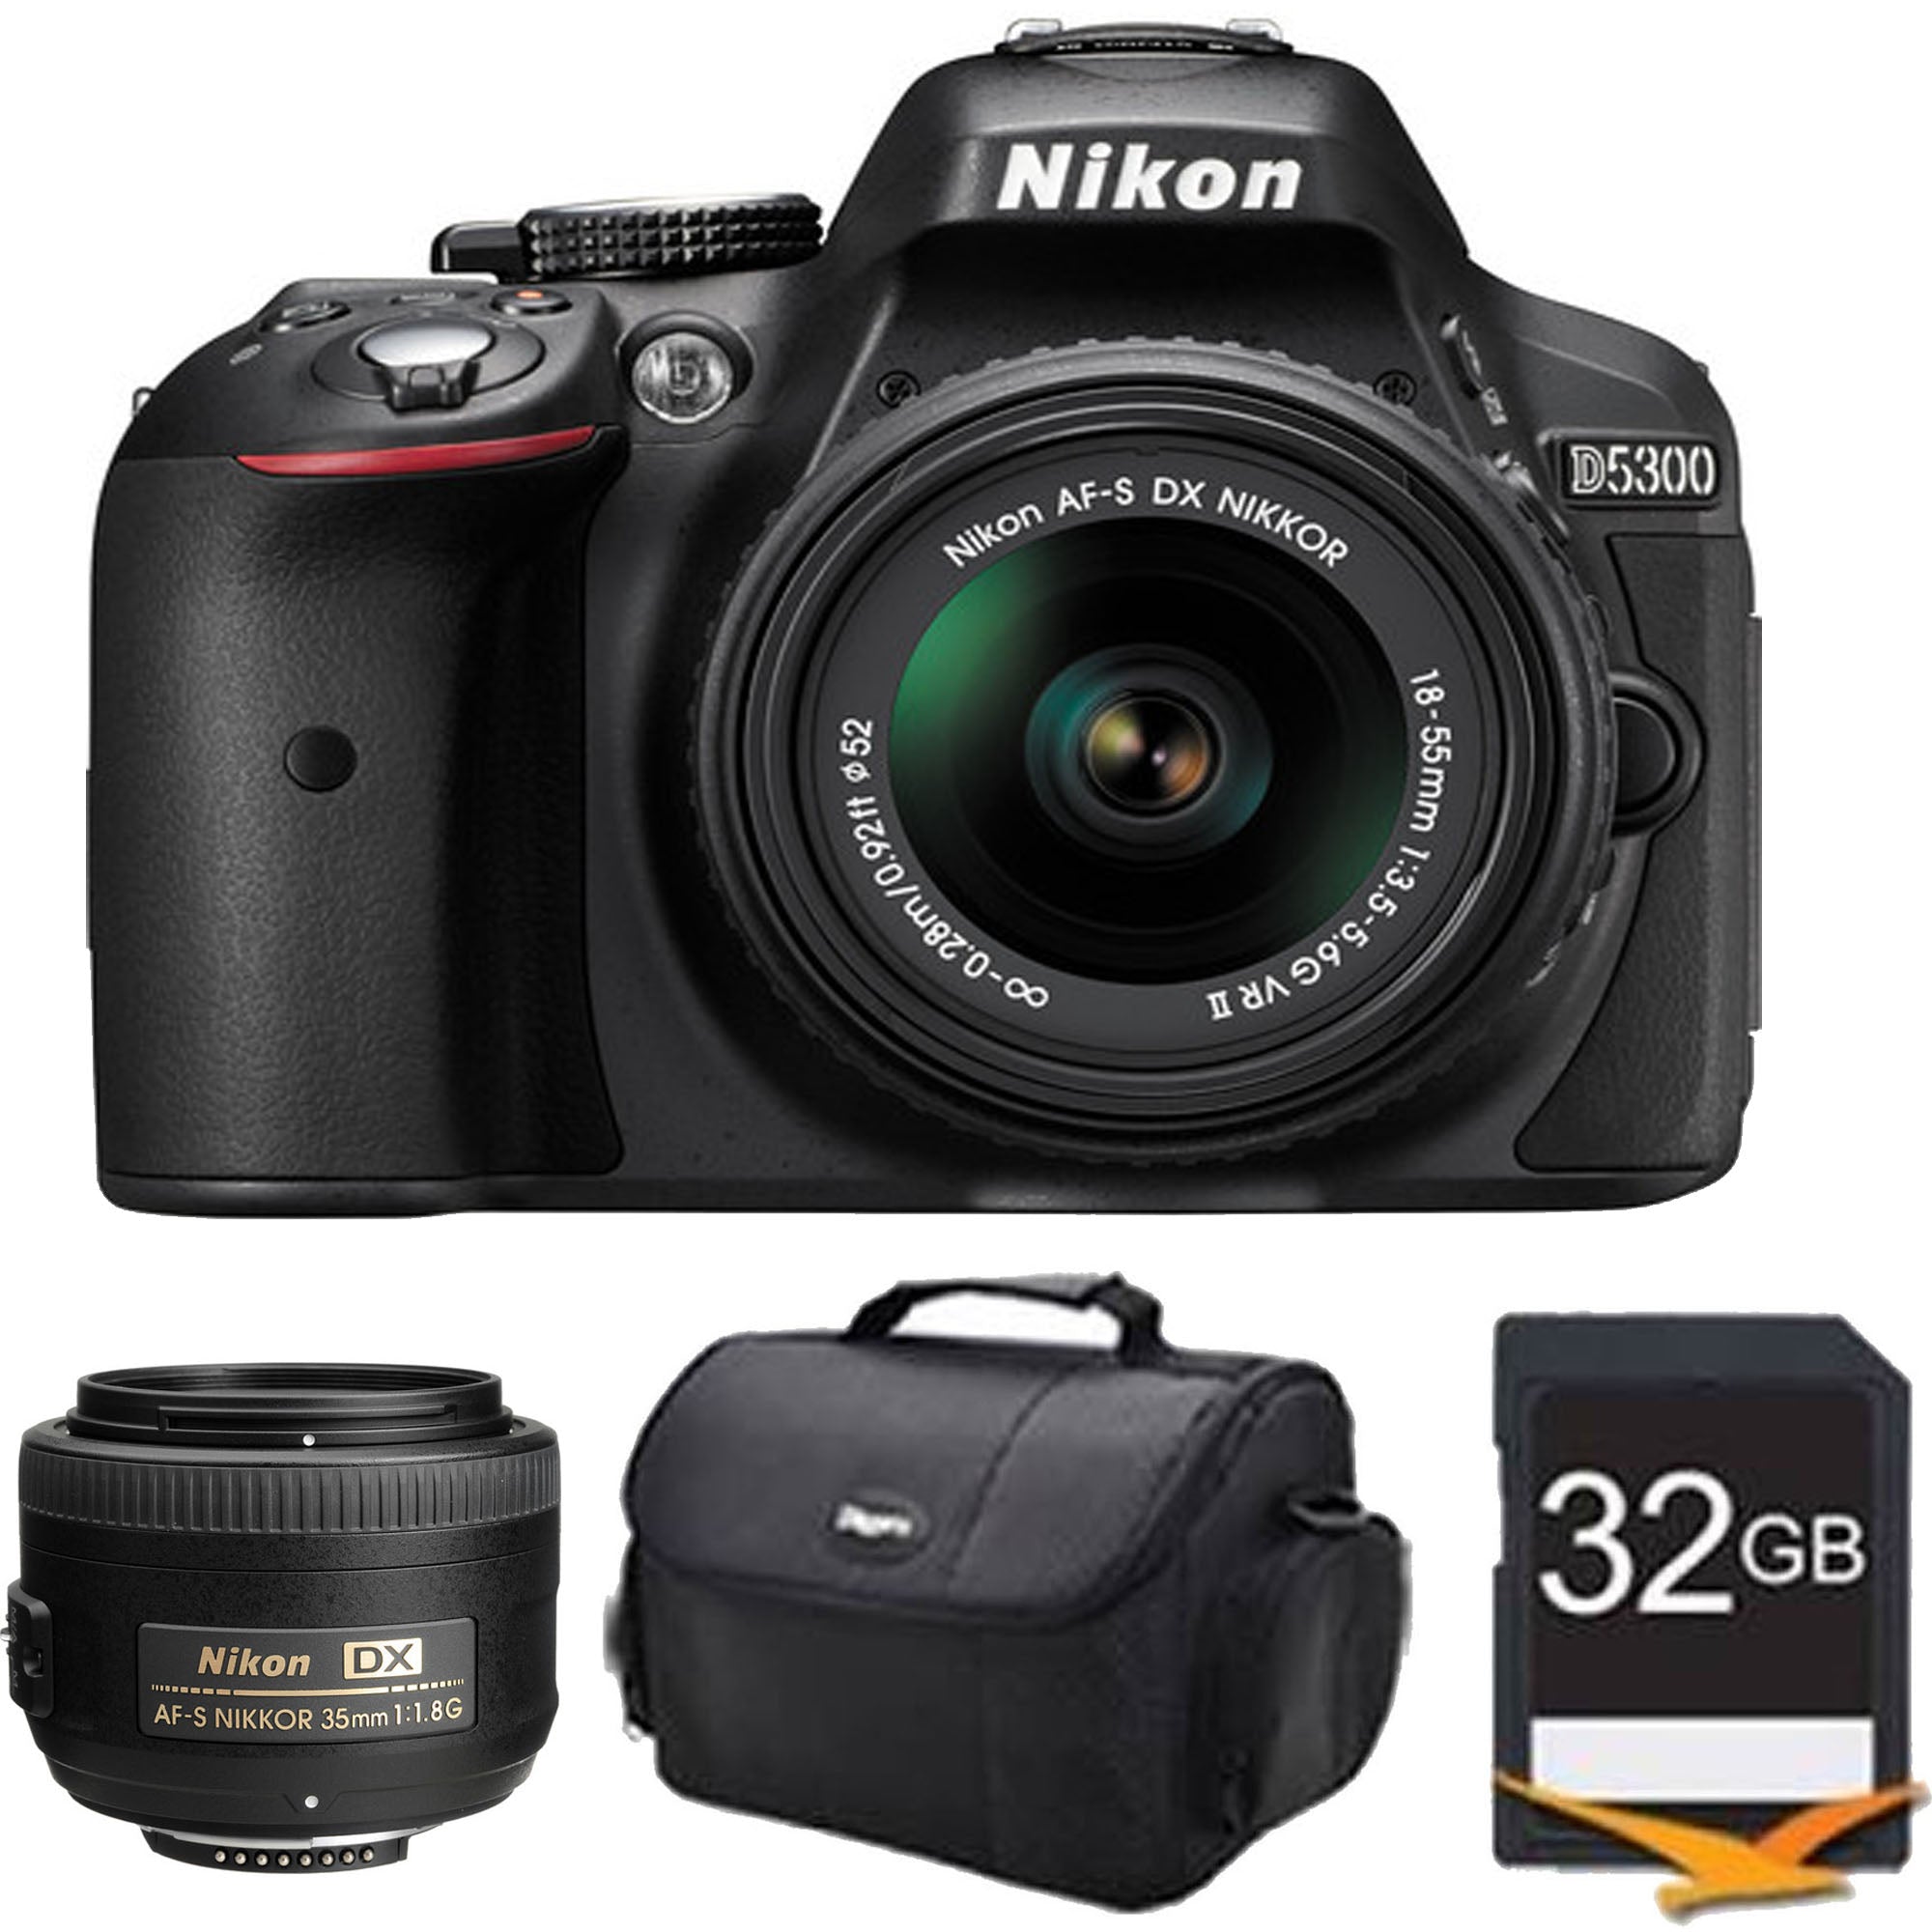 Nikon D5300/D5600 DSLR Camera with 18-55mm Lens & AF-S DX NIKKOR